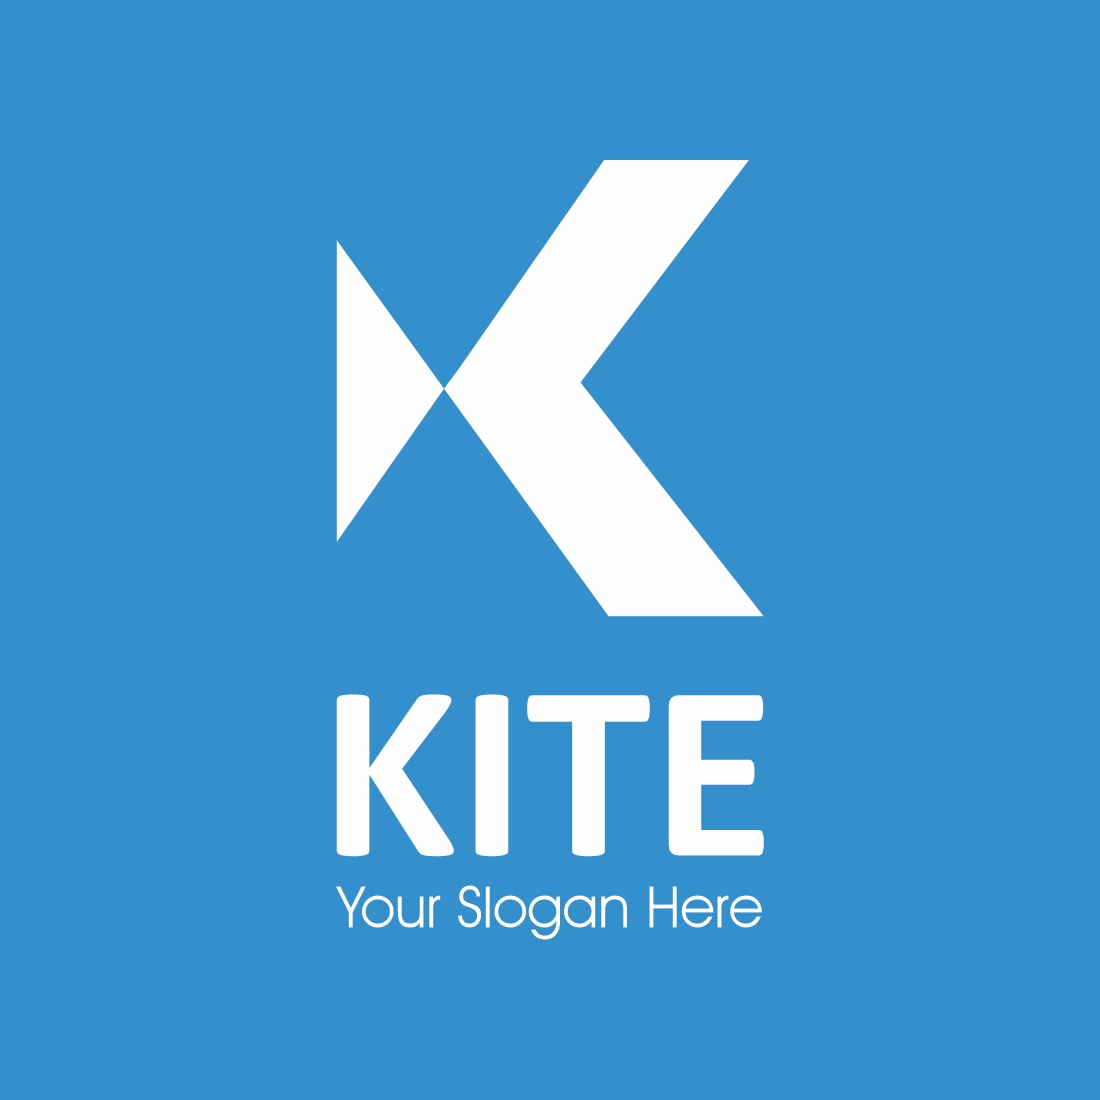 kite k letter logo jpg 2